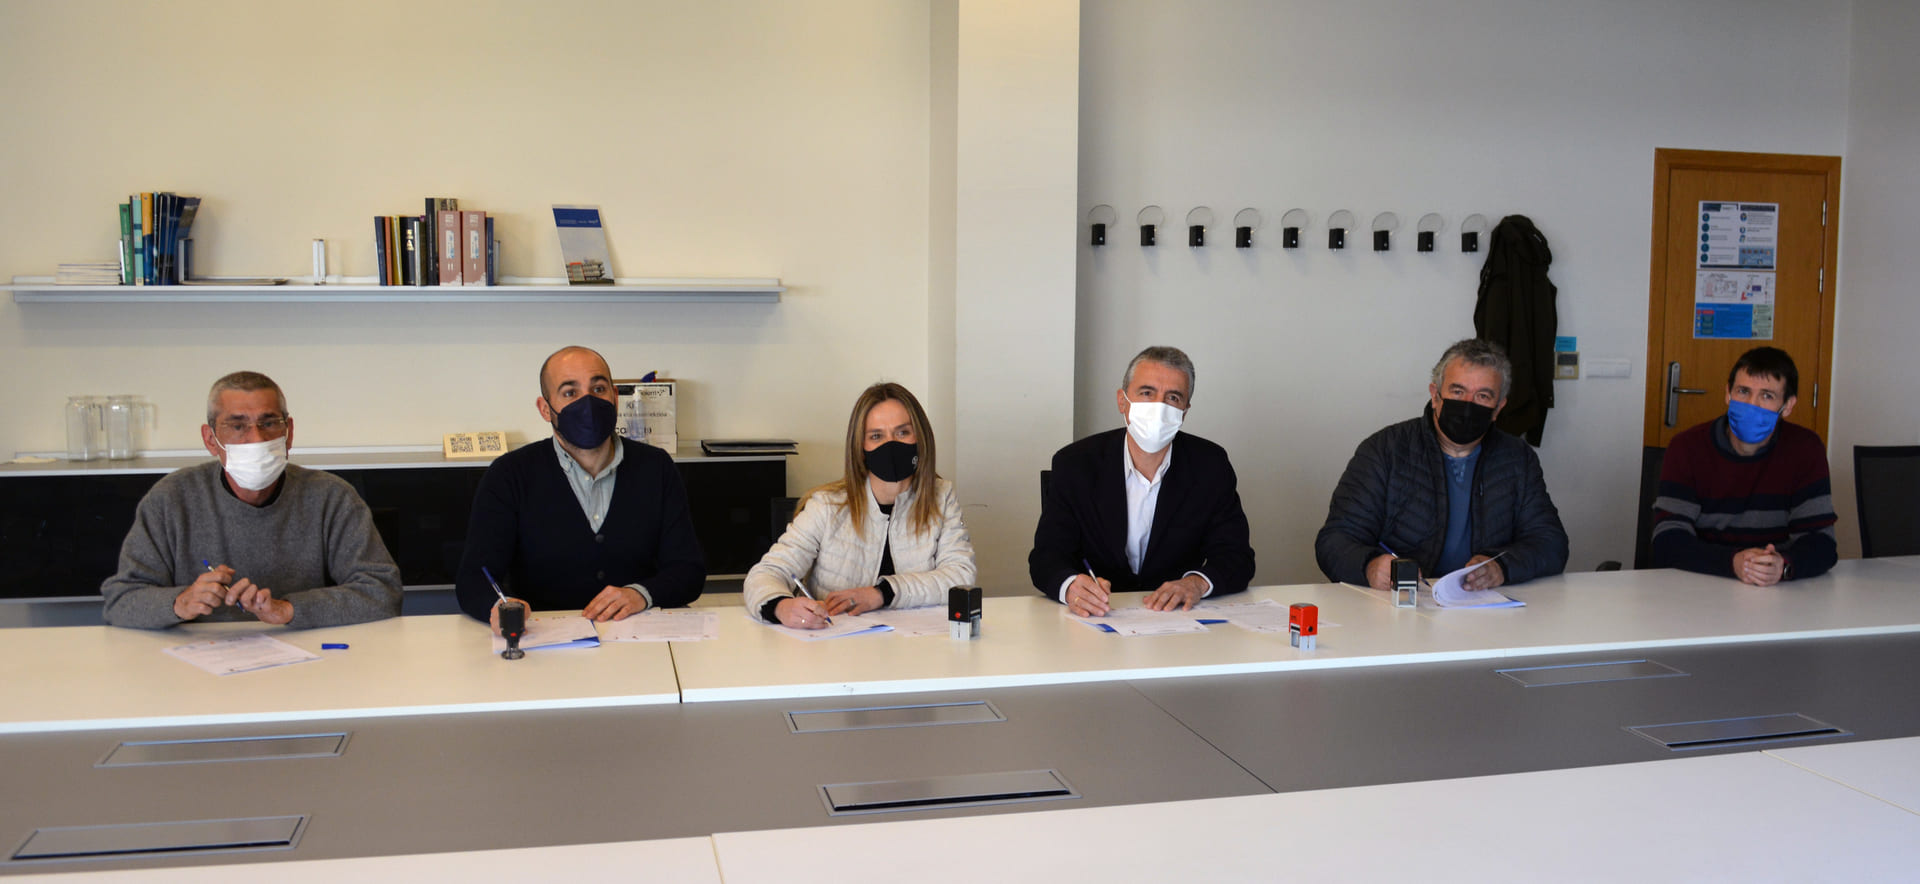 firmantes del acuerdo entre Goierri Eskola y los alcaldes de Beasain, Lazkao, Olaberria y Ordizia.